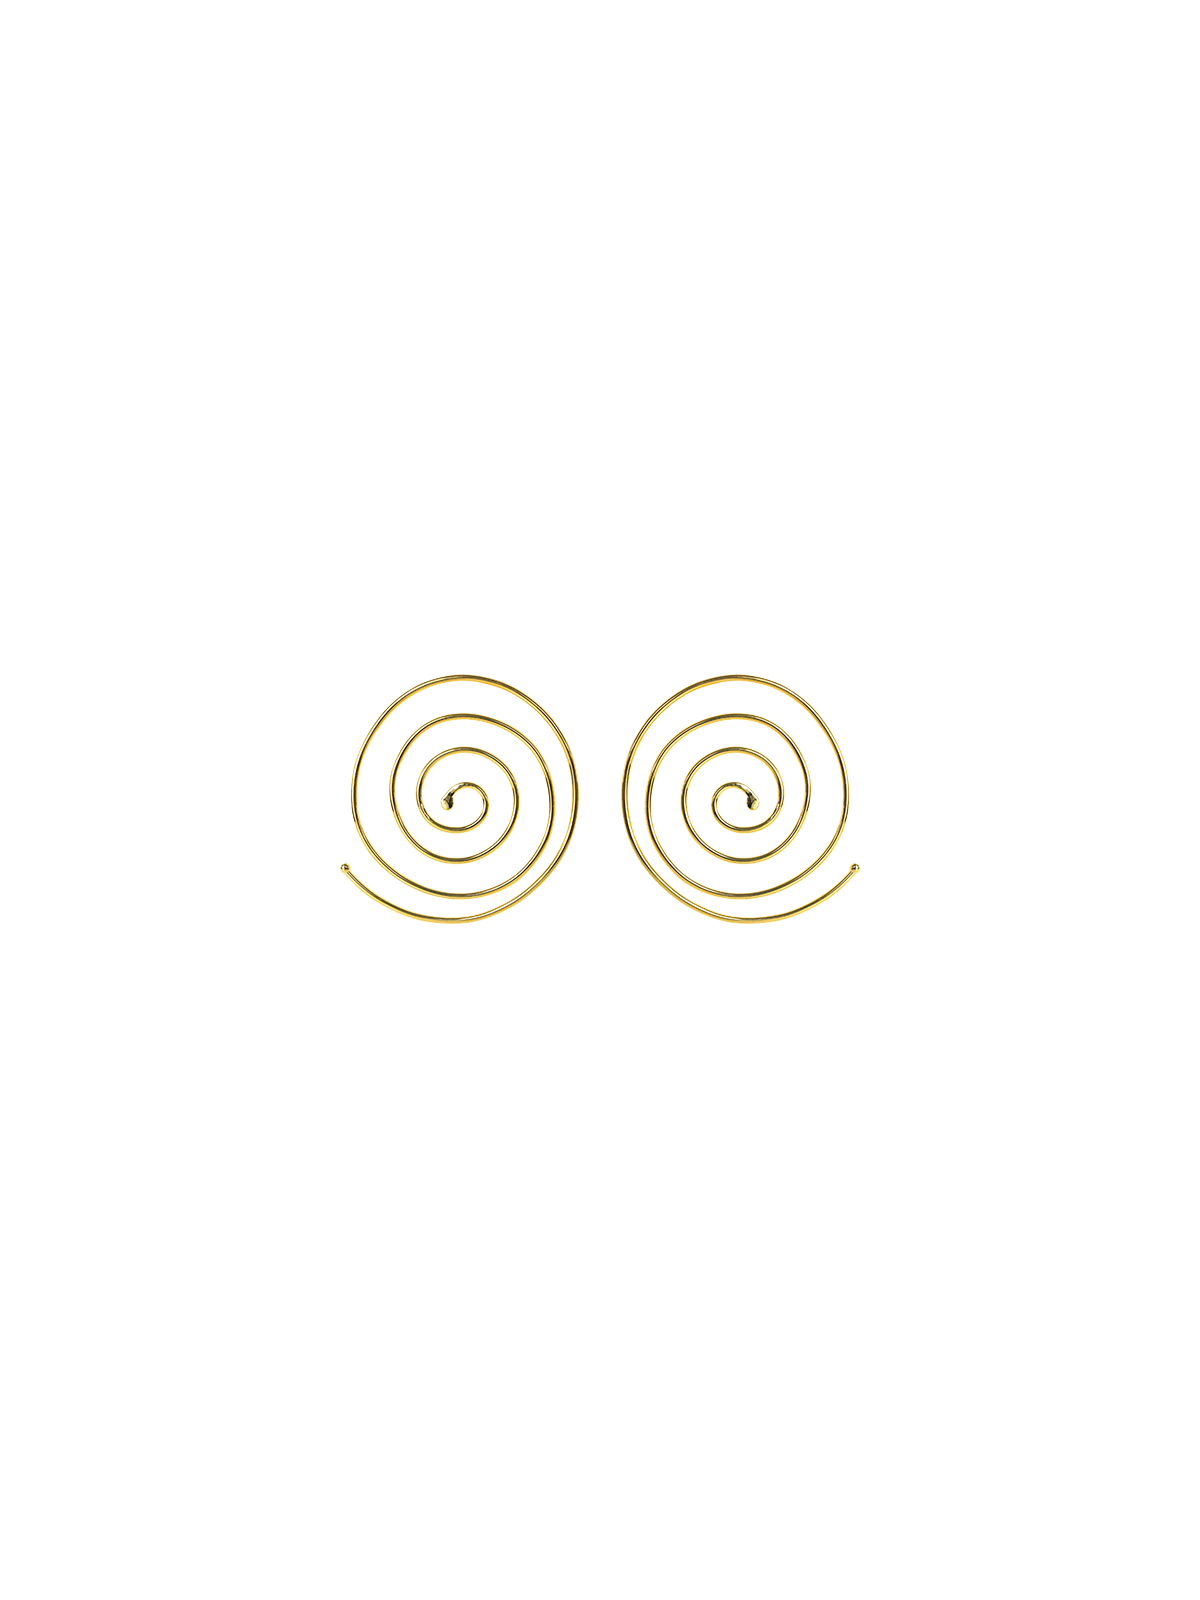 Aretes Dorados Espiral